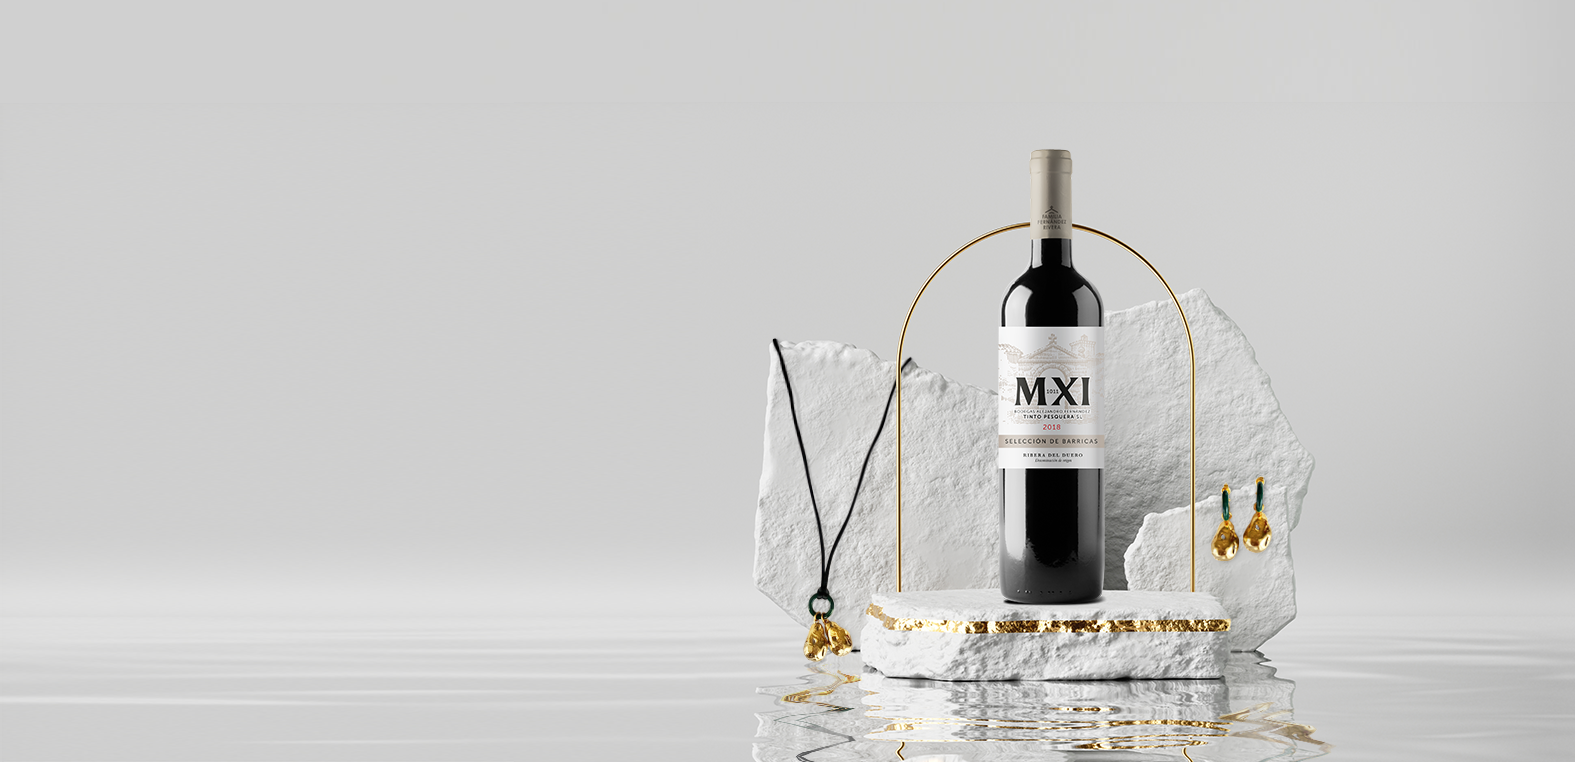 Pack de vino MXI y joya de edición limitada de Paola Q